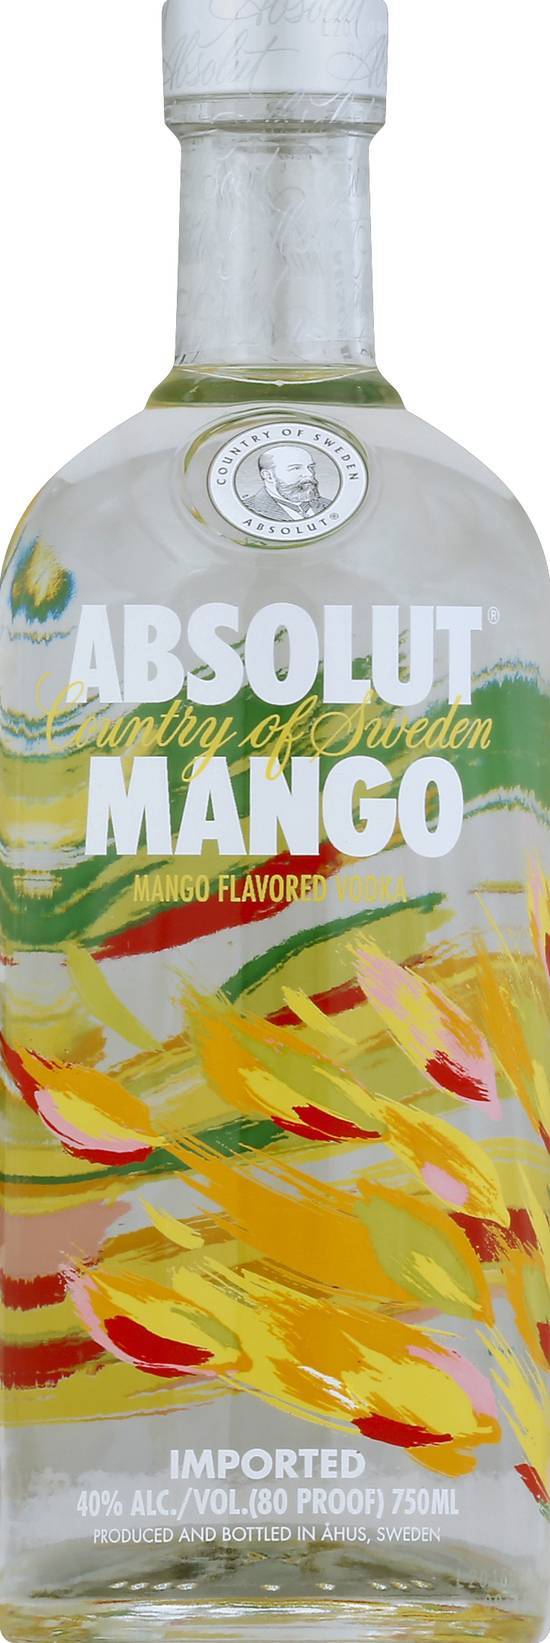 Absolut Mango Vodka (750 ml)